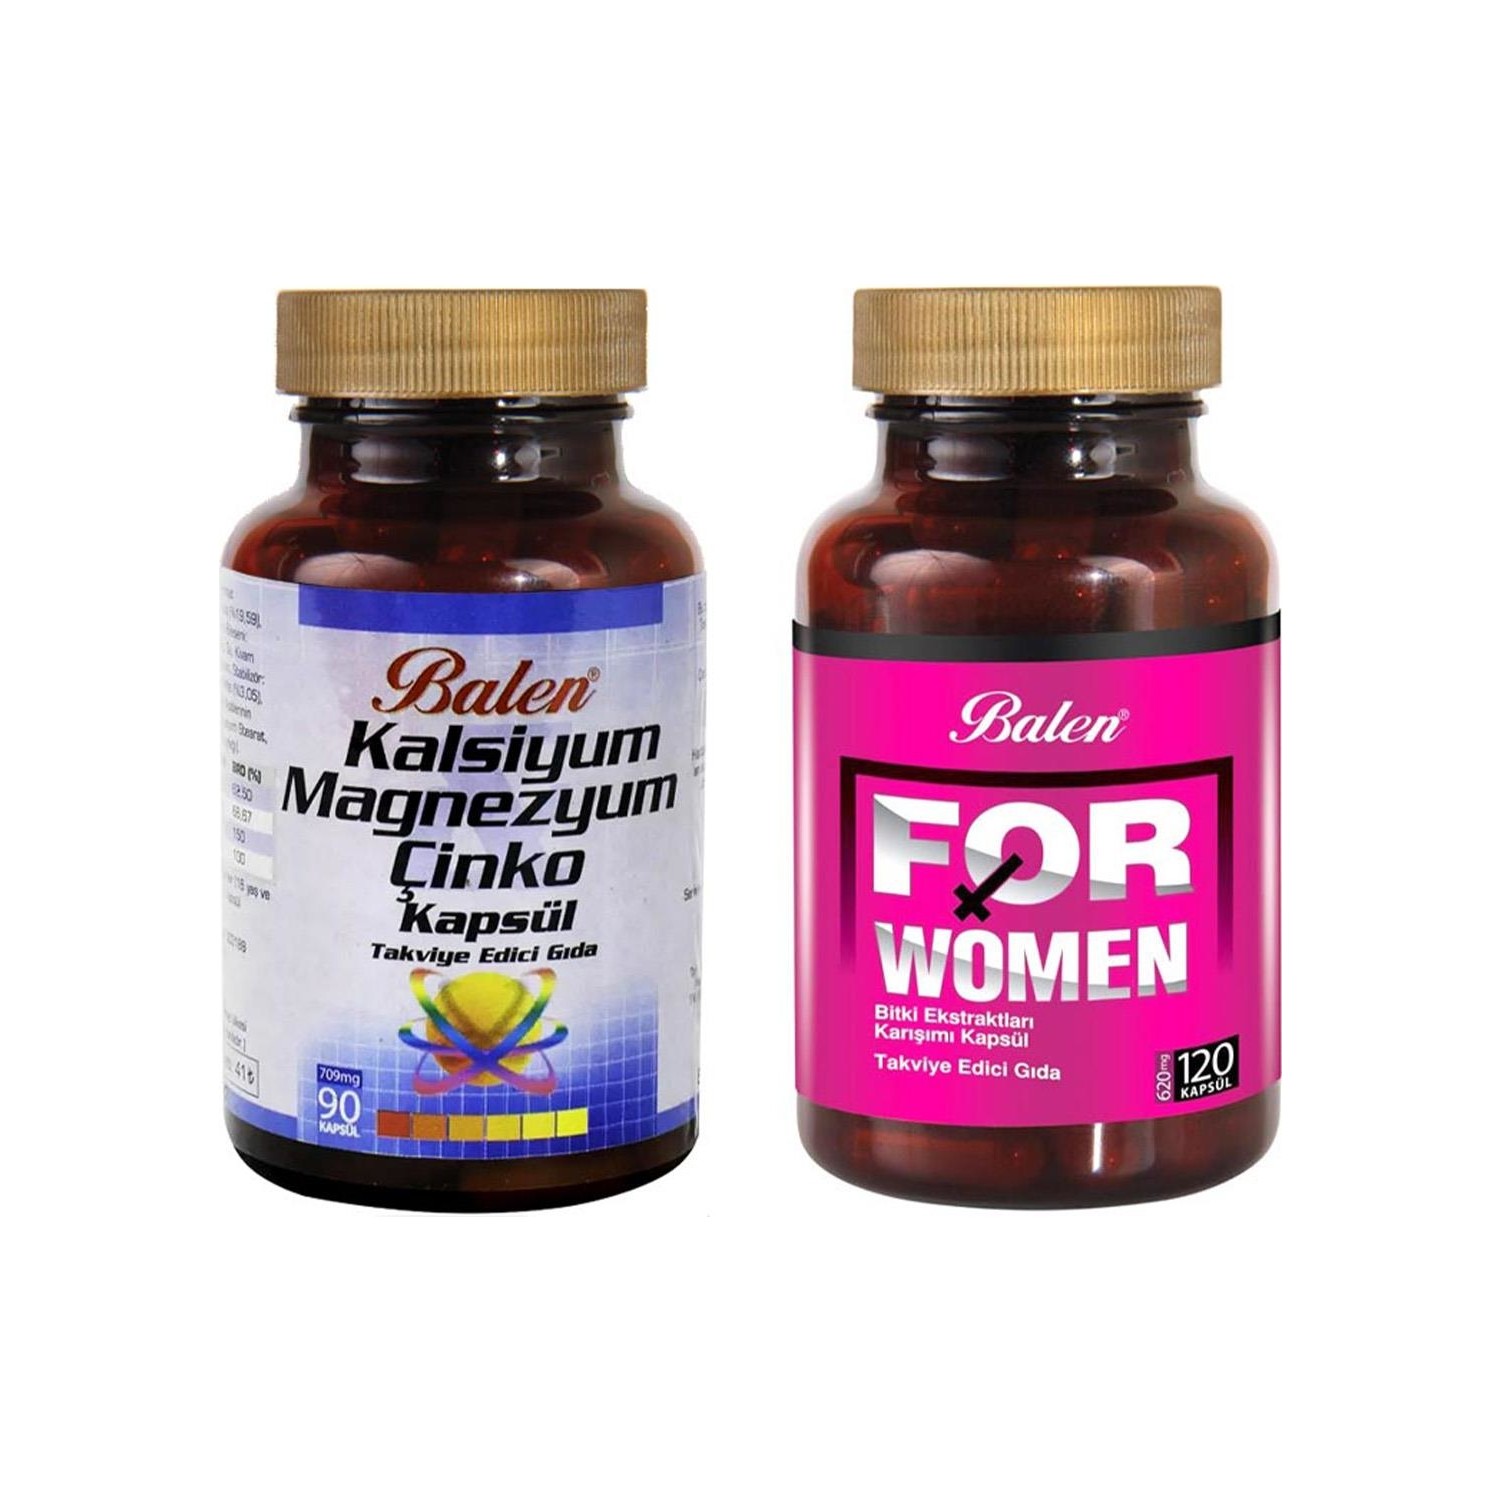 Активная добавка Balen For Woman, 120 капсул, 500 мг + Витаминный комплекс Balen Calcium Magnesium Zinc, 90 капсул, 709 мг масло примулы balen 500 мг 90 капсул